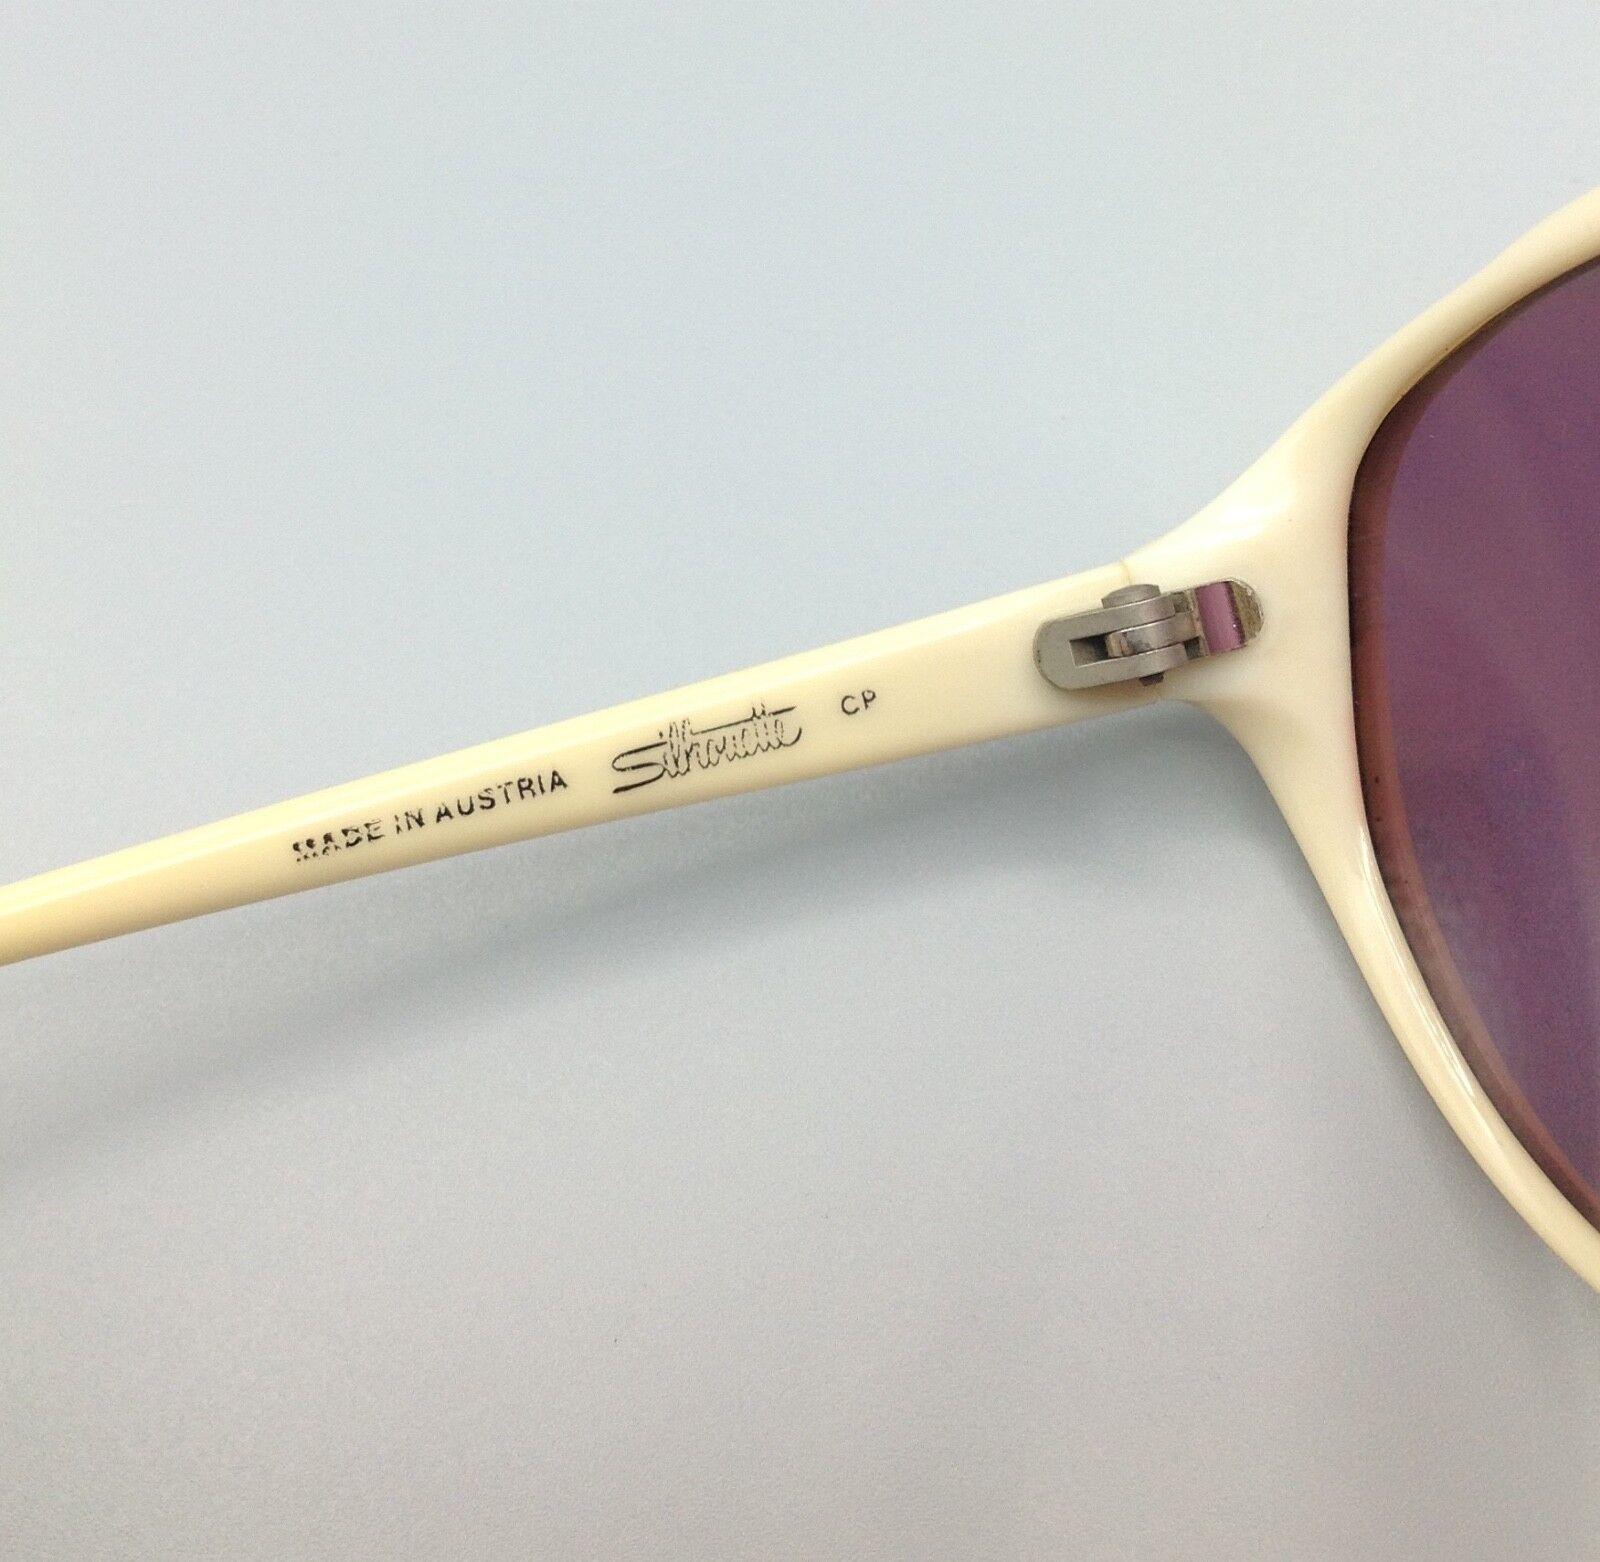 SILHOUETTE occhiali sole Austria mod.3011 c025 vintage SUNGLASSES SONNENBRILLEN